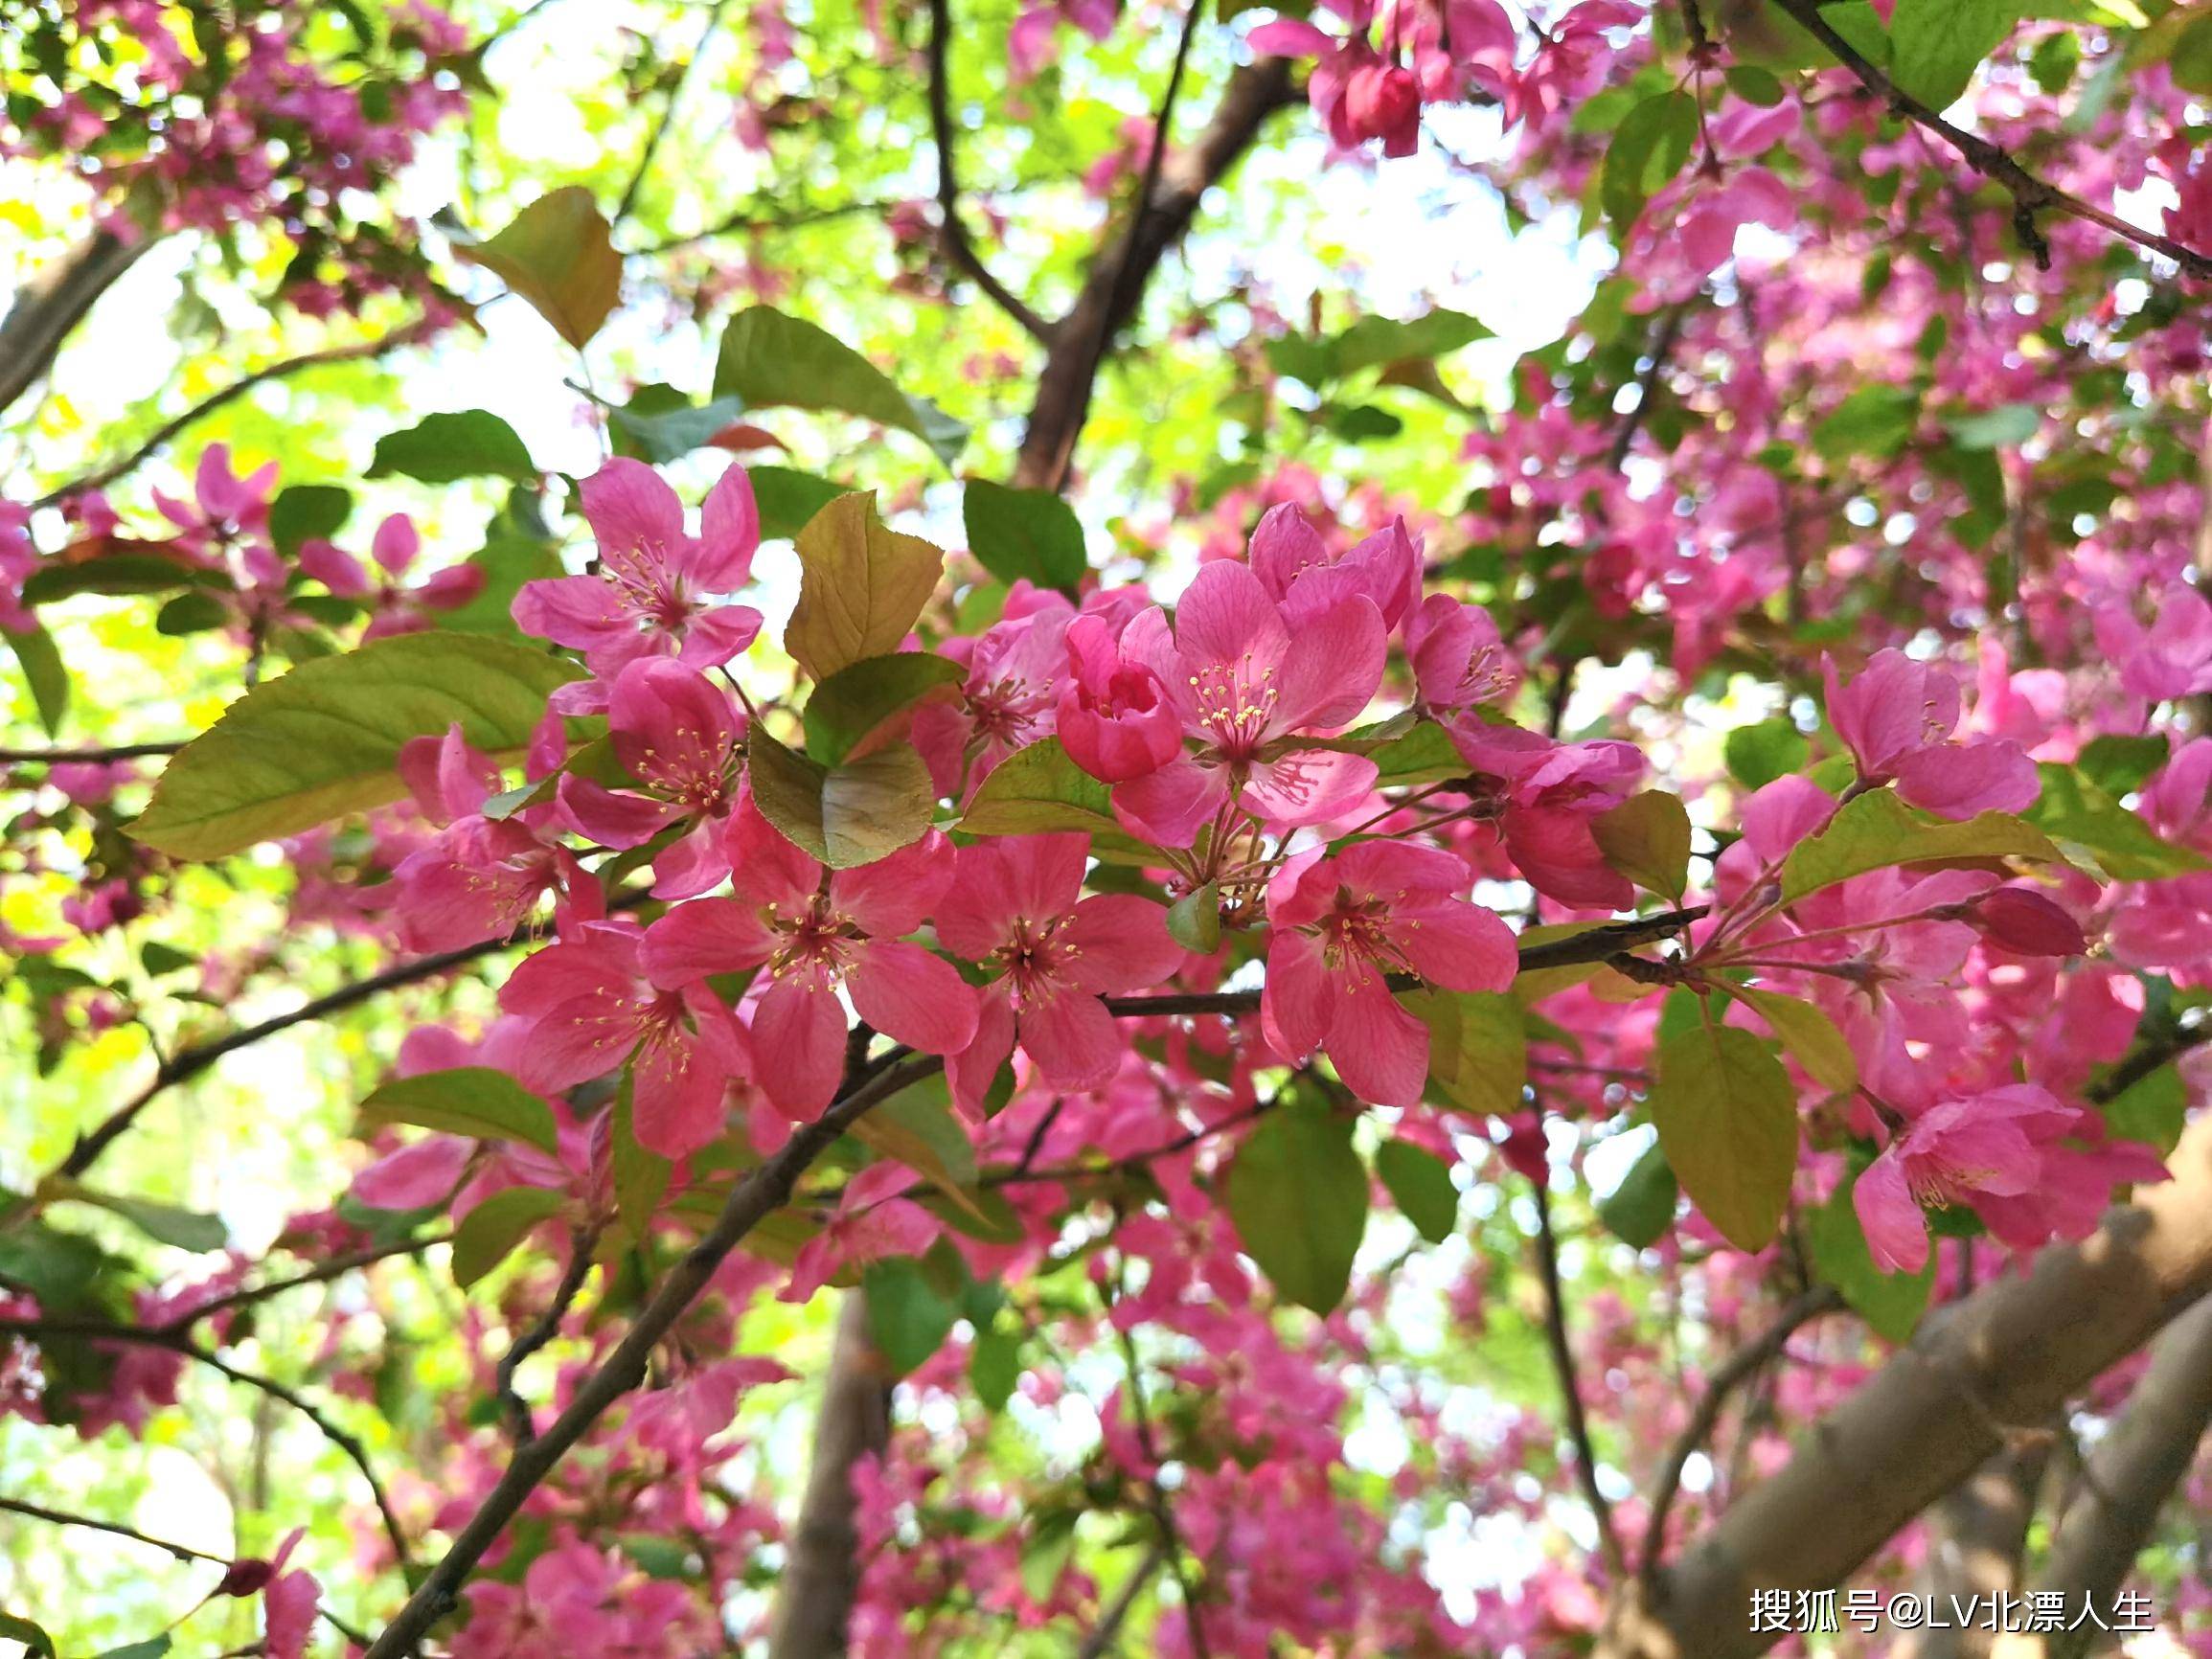 元大都公园海棠花溪之二，海棠花争奇斗艳， 魅惑众生，22种海棠品种配图